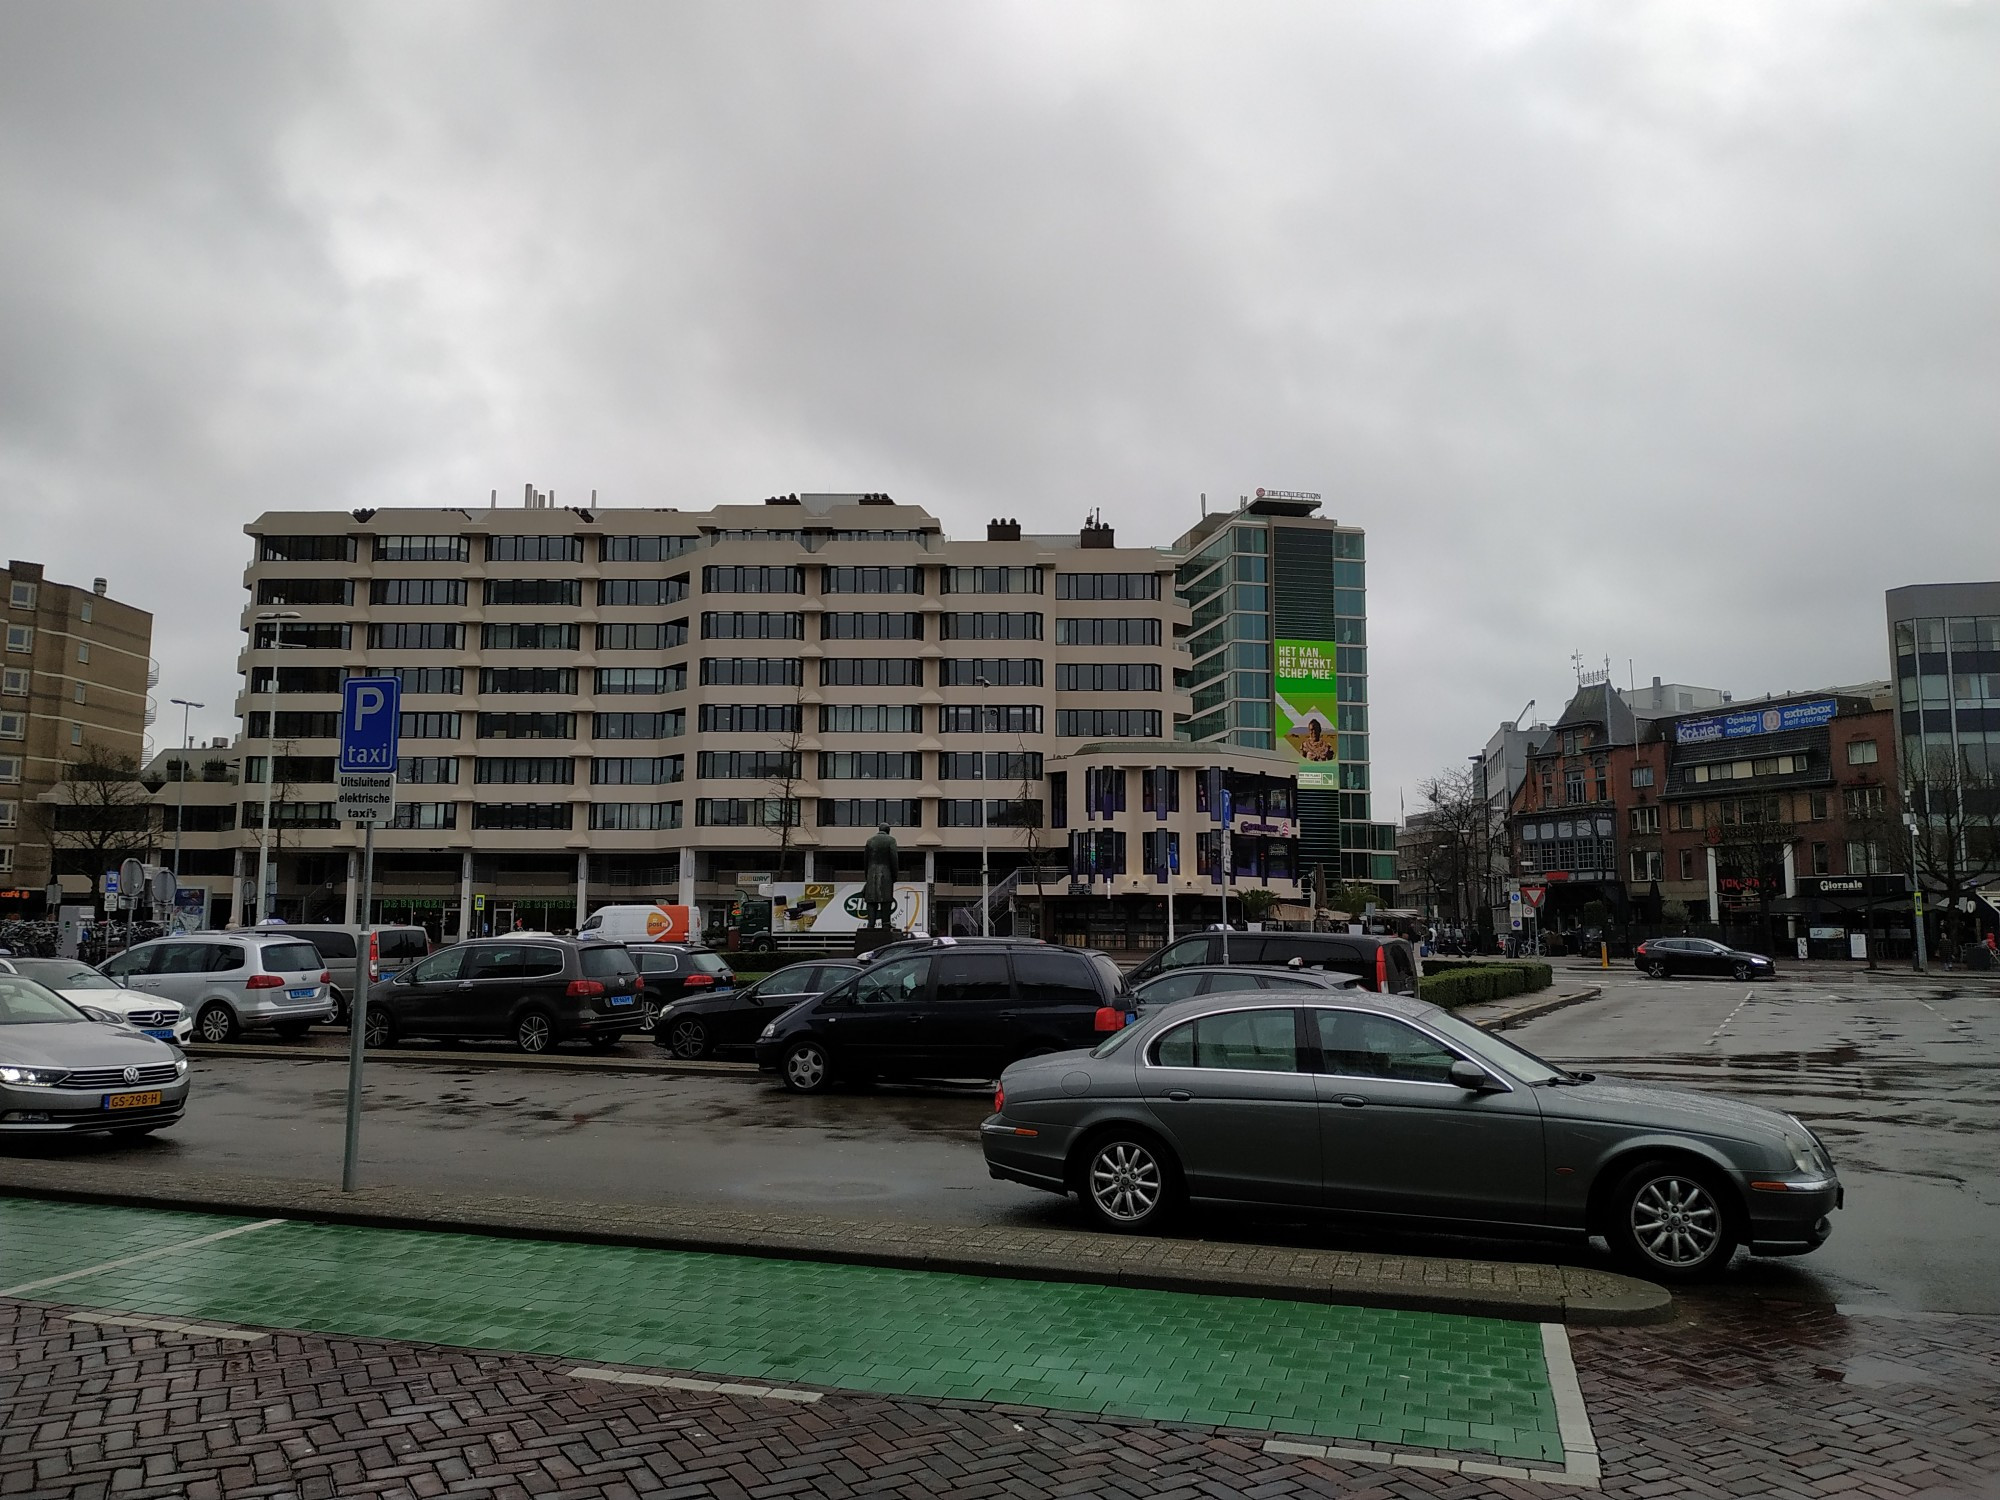 Эйндховен. Площадь Stationsplein. (14.03.2019)